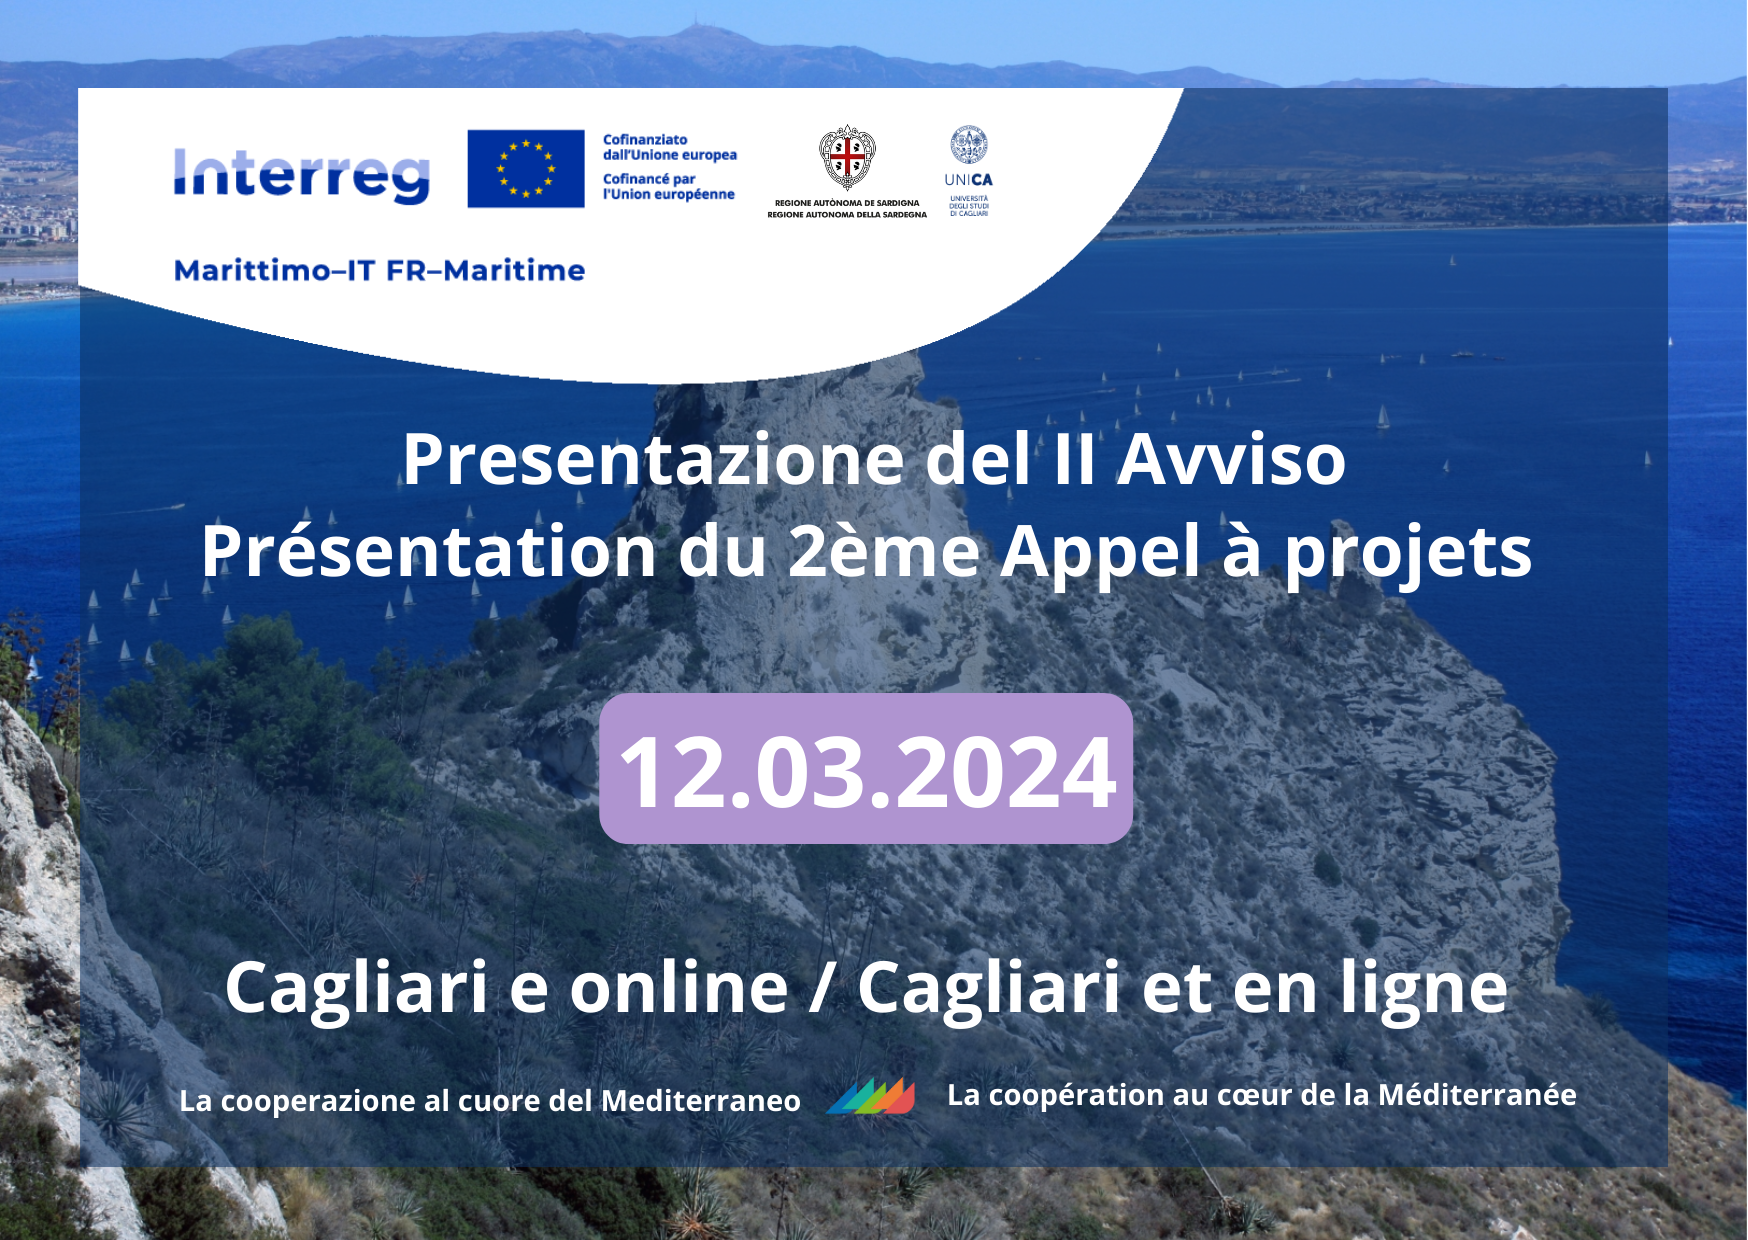 Regione Sardegna- Evento di presentazione del II Avviso del Programma a Cagliari